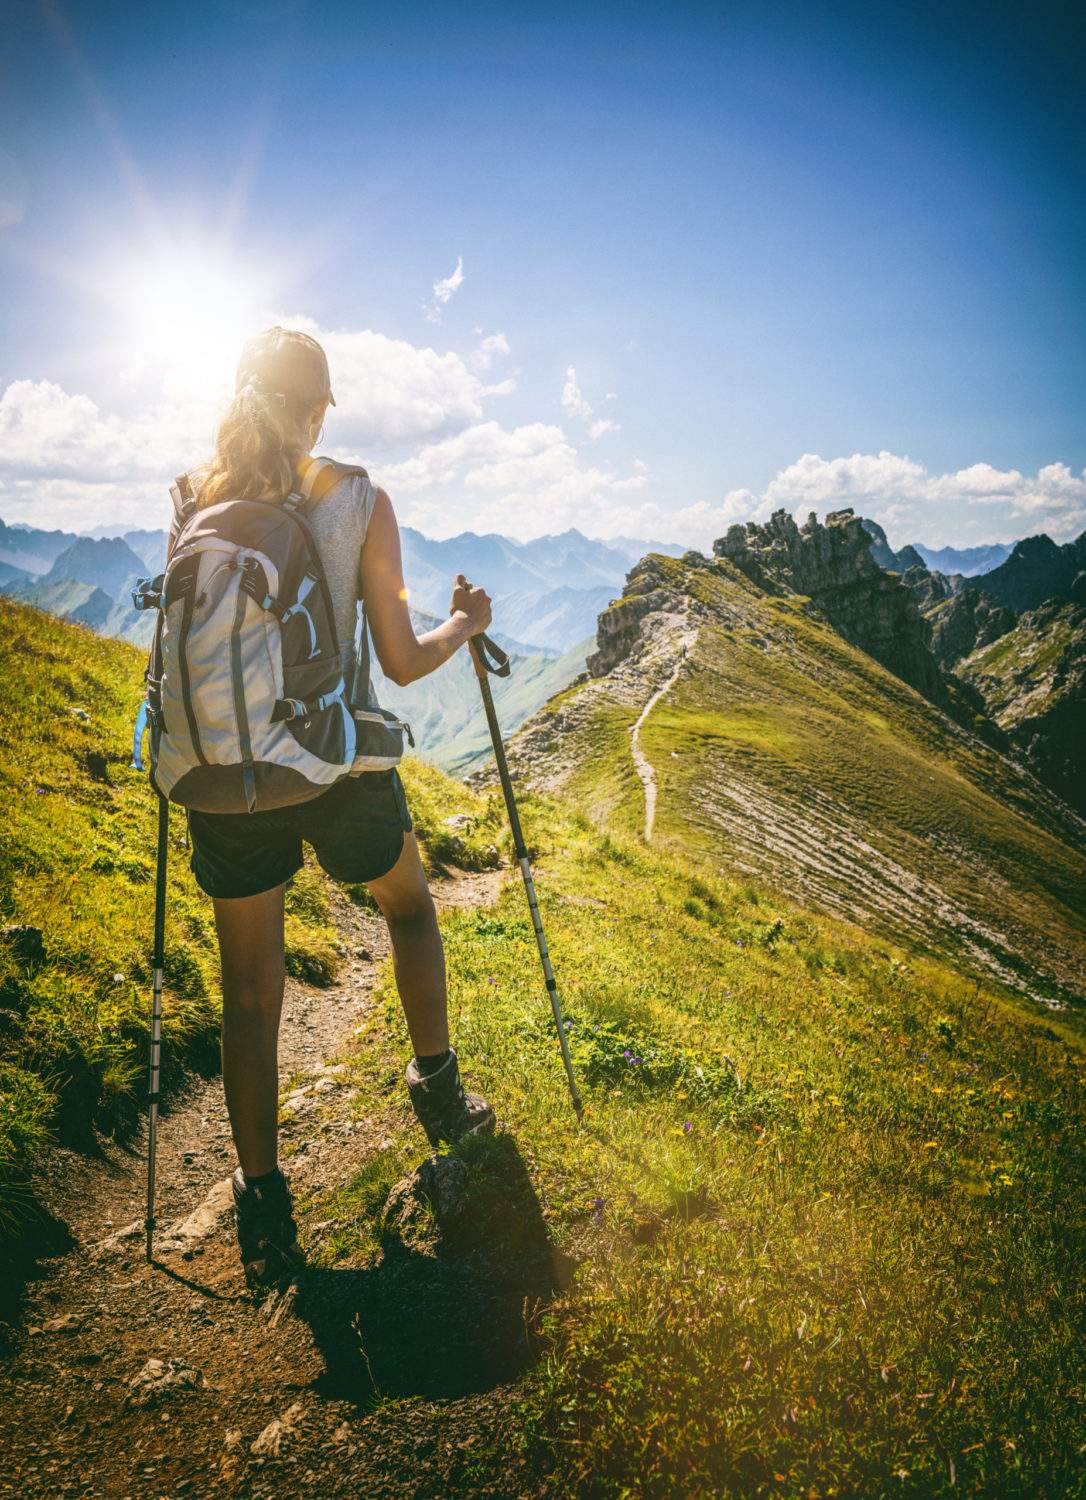 Wandercoaching - Ziele finden und erreichen